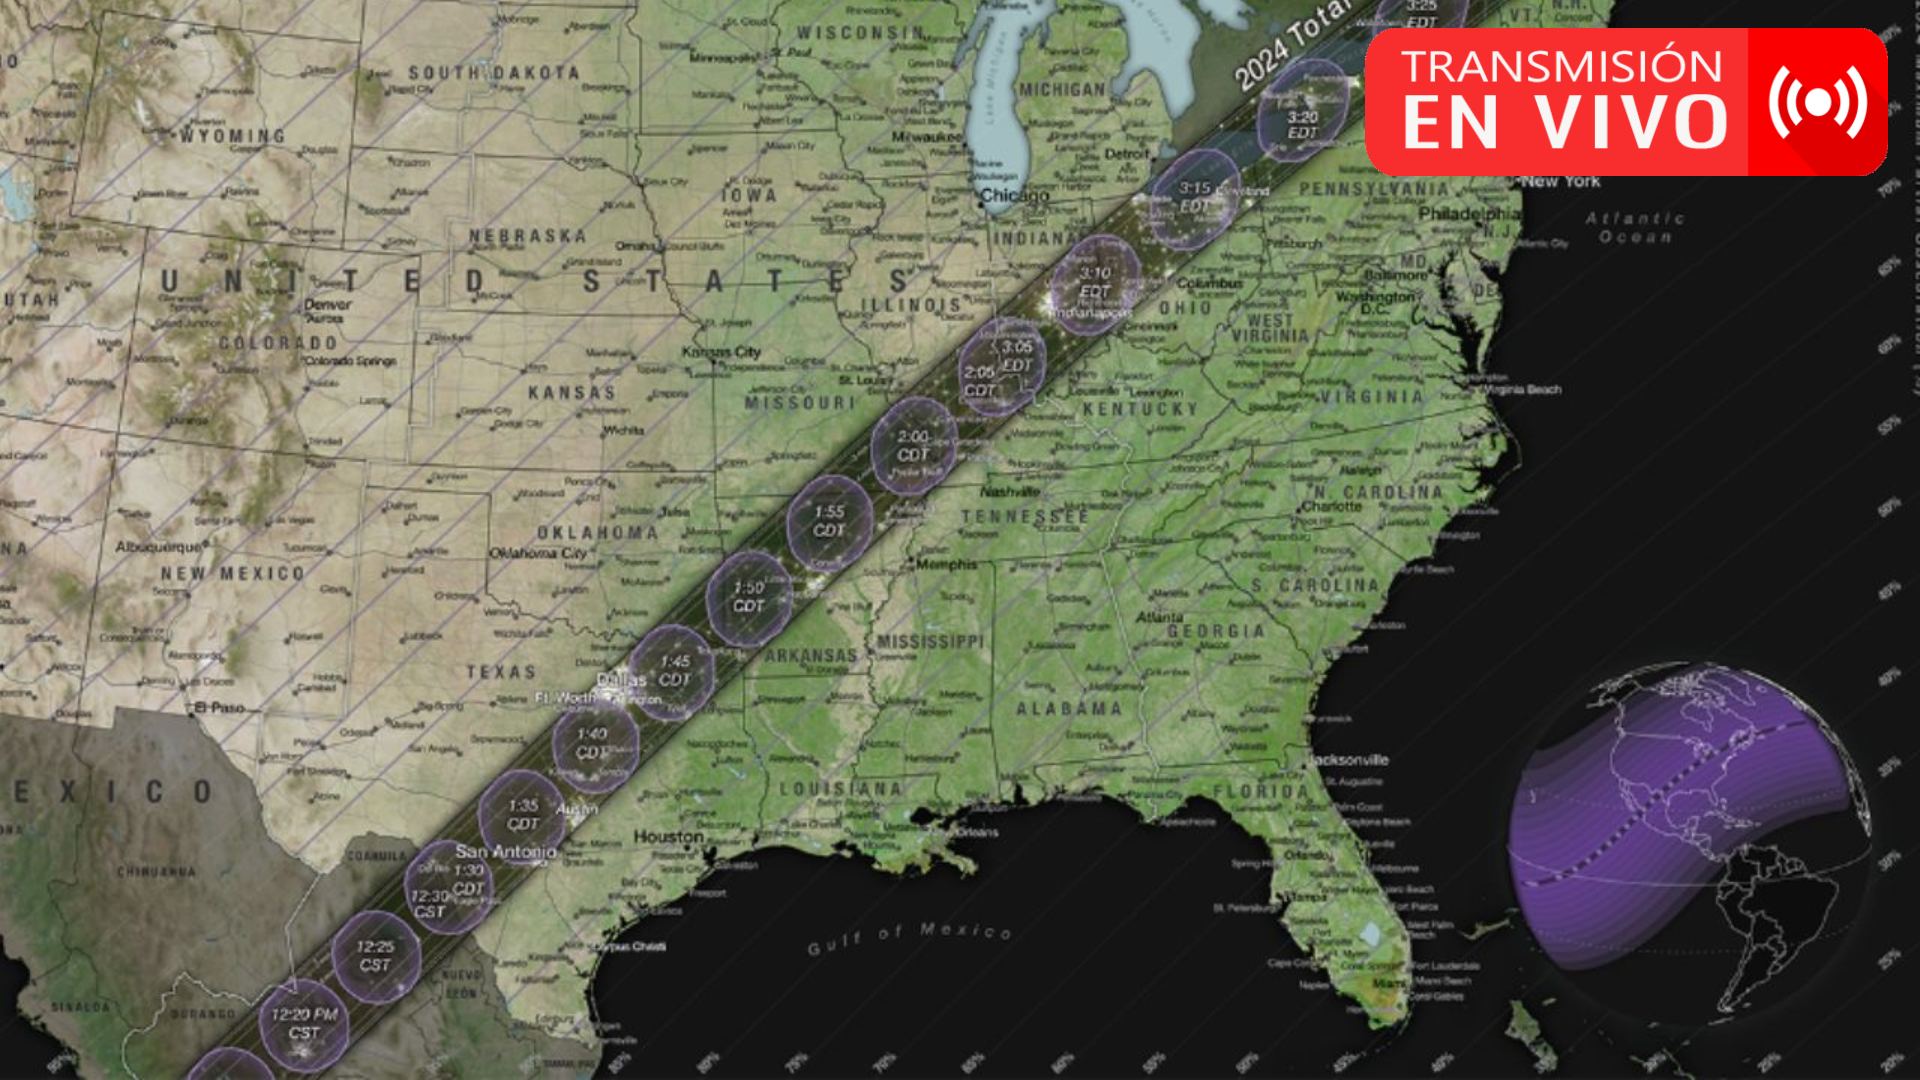 EN VIVO?: Trayectoria del eclipse solar del 8 de abril